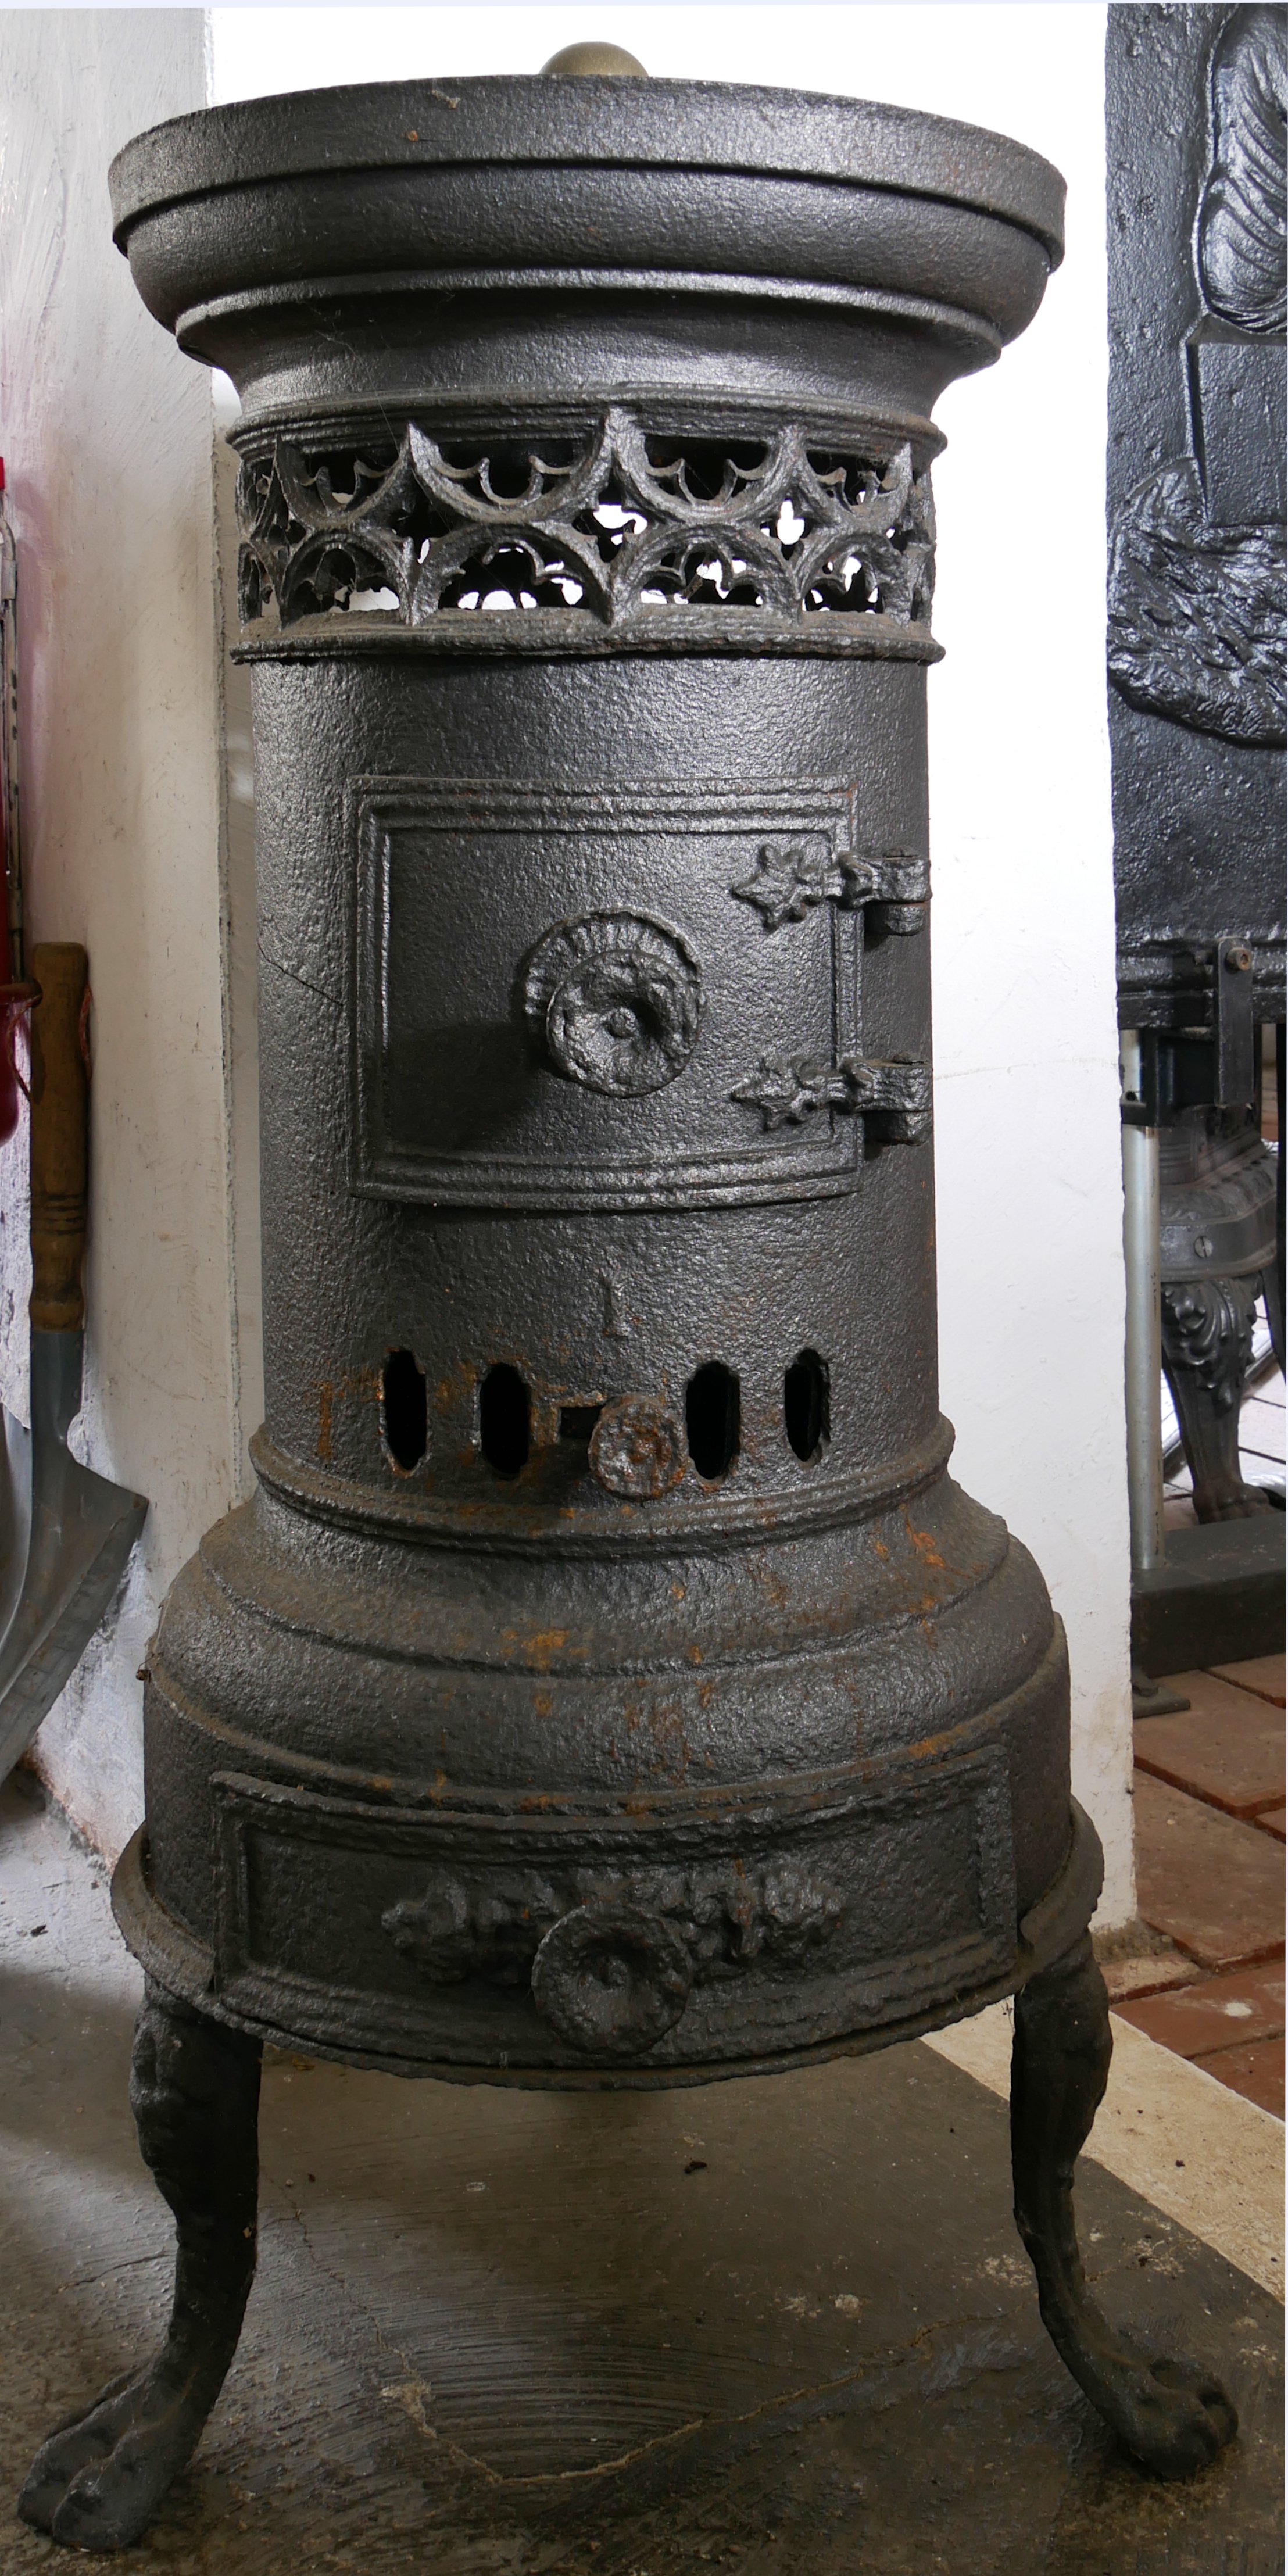 Kleiner Kanonenofen (Volkskunde- und Freilichtmuseum Roscheider Hof CC0)